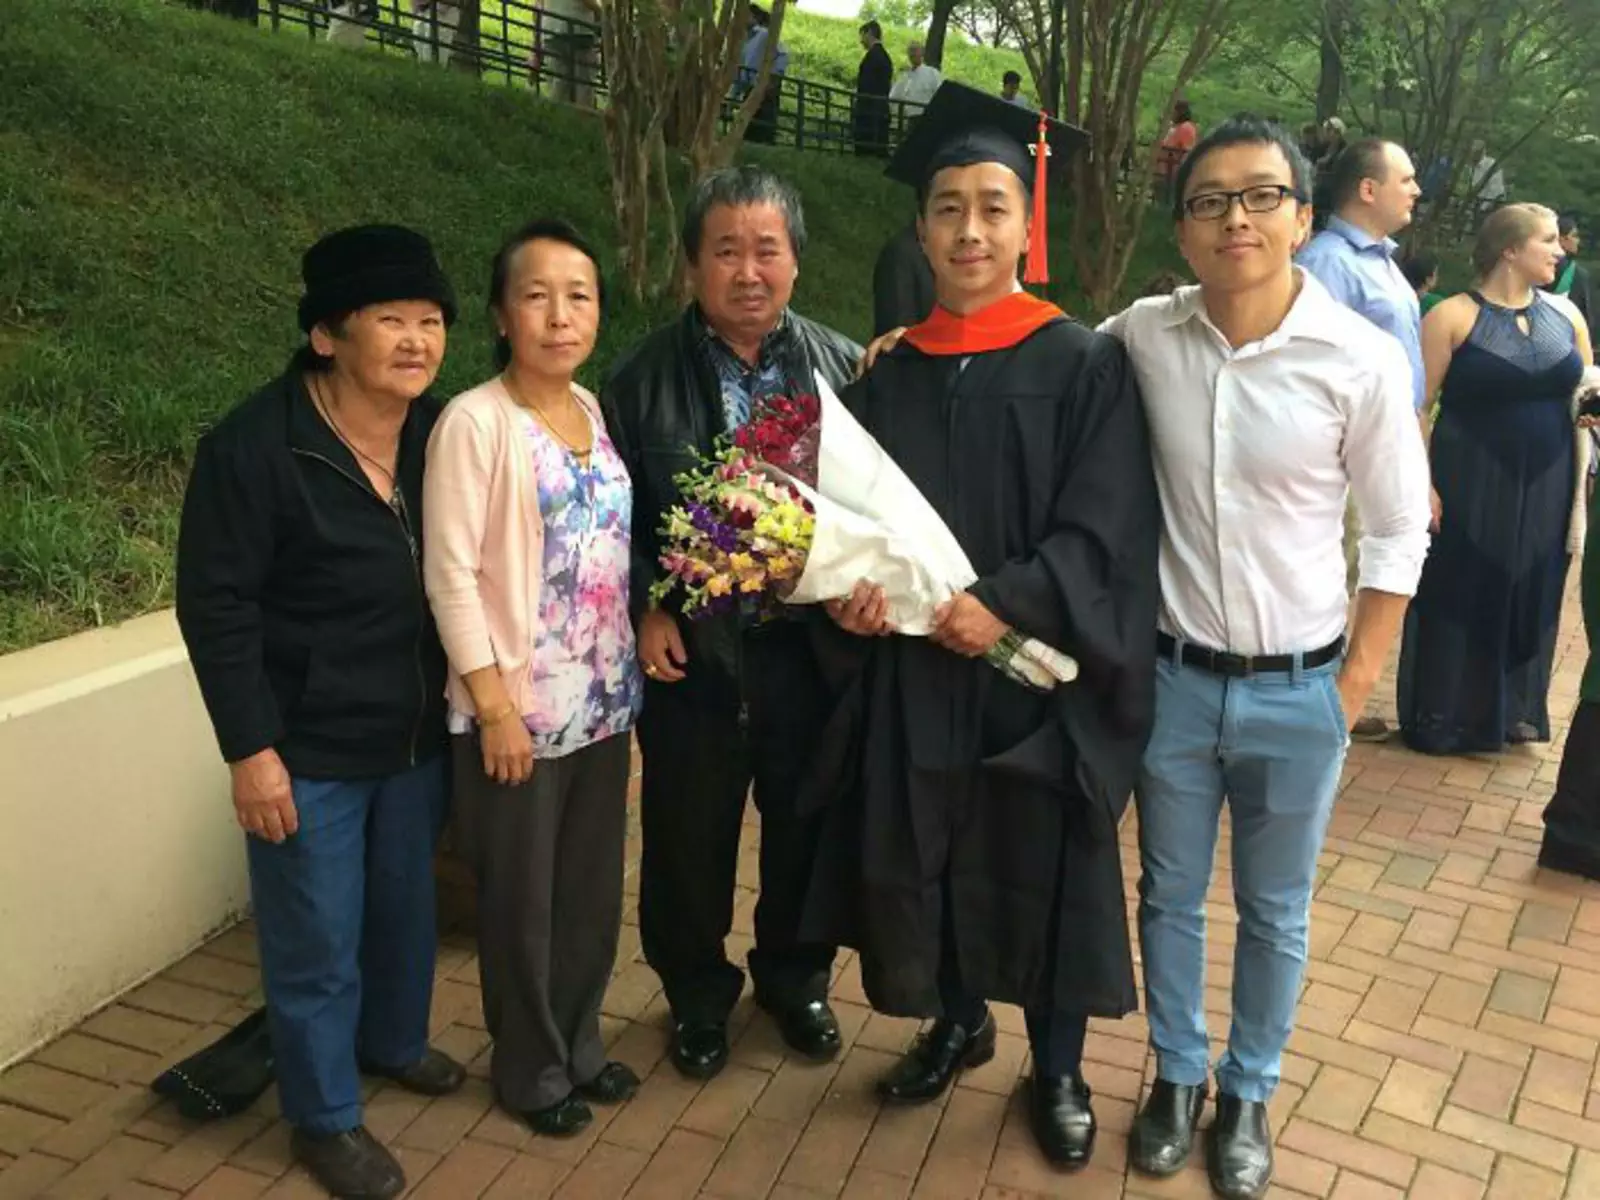 “Брат был первым, кто получил диплом магистра в моей семье. Мой папа не смог сдержать эмоций”. 